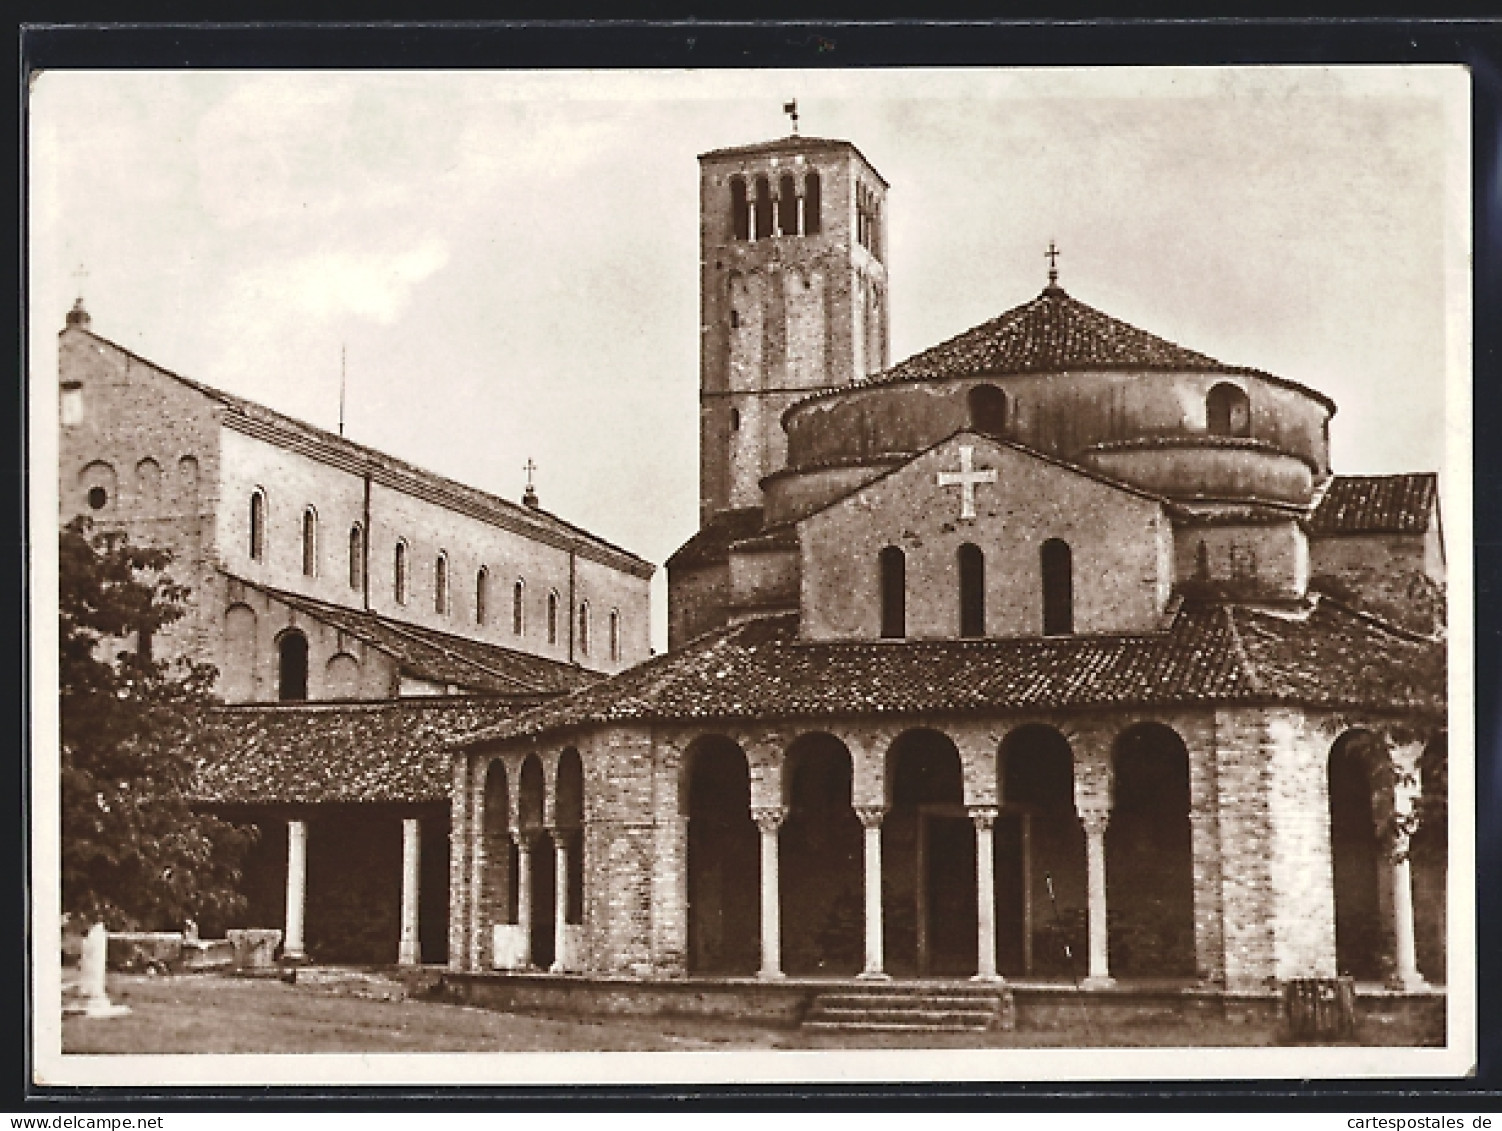 Cartolina Venezia, Torcello, Cattedrale Di S. María Assunto E Chiesa Di S. Fosca  - Venezia (Venice)